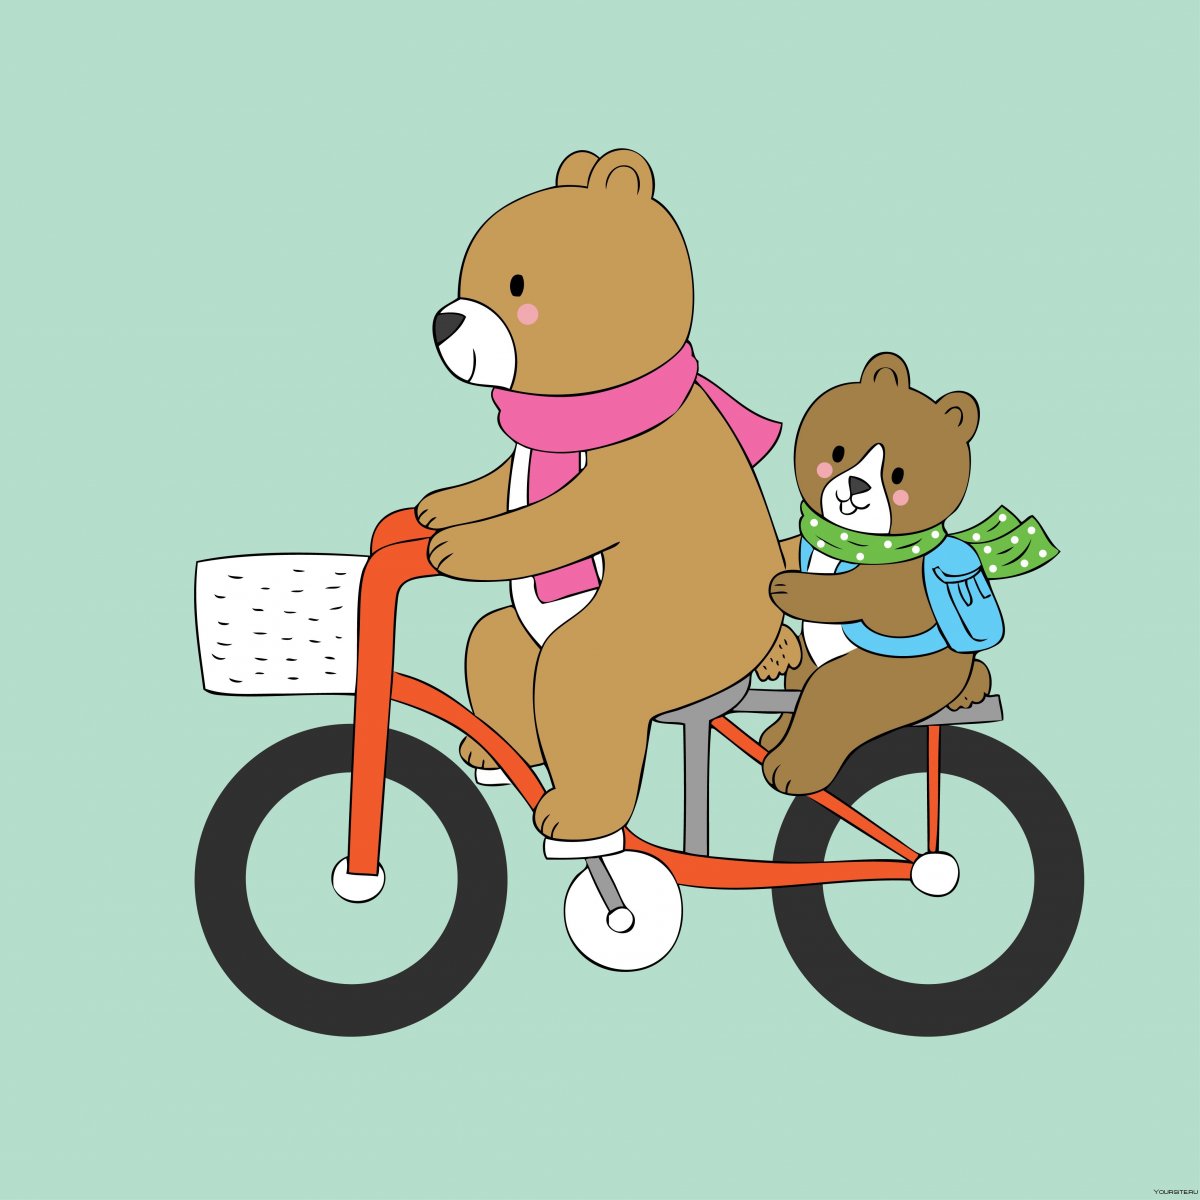 Медведь наивелосипеде